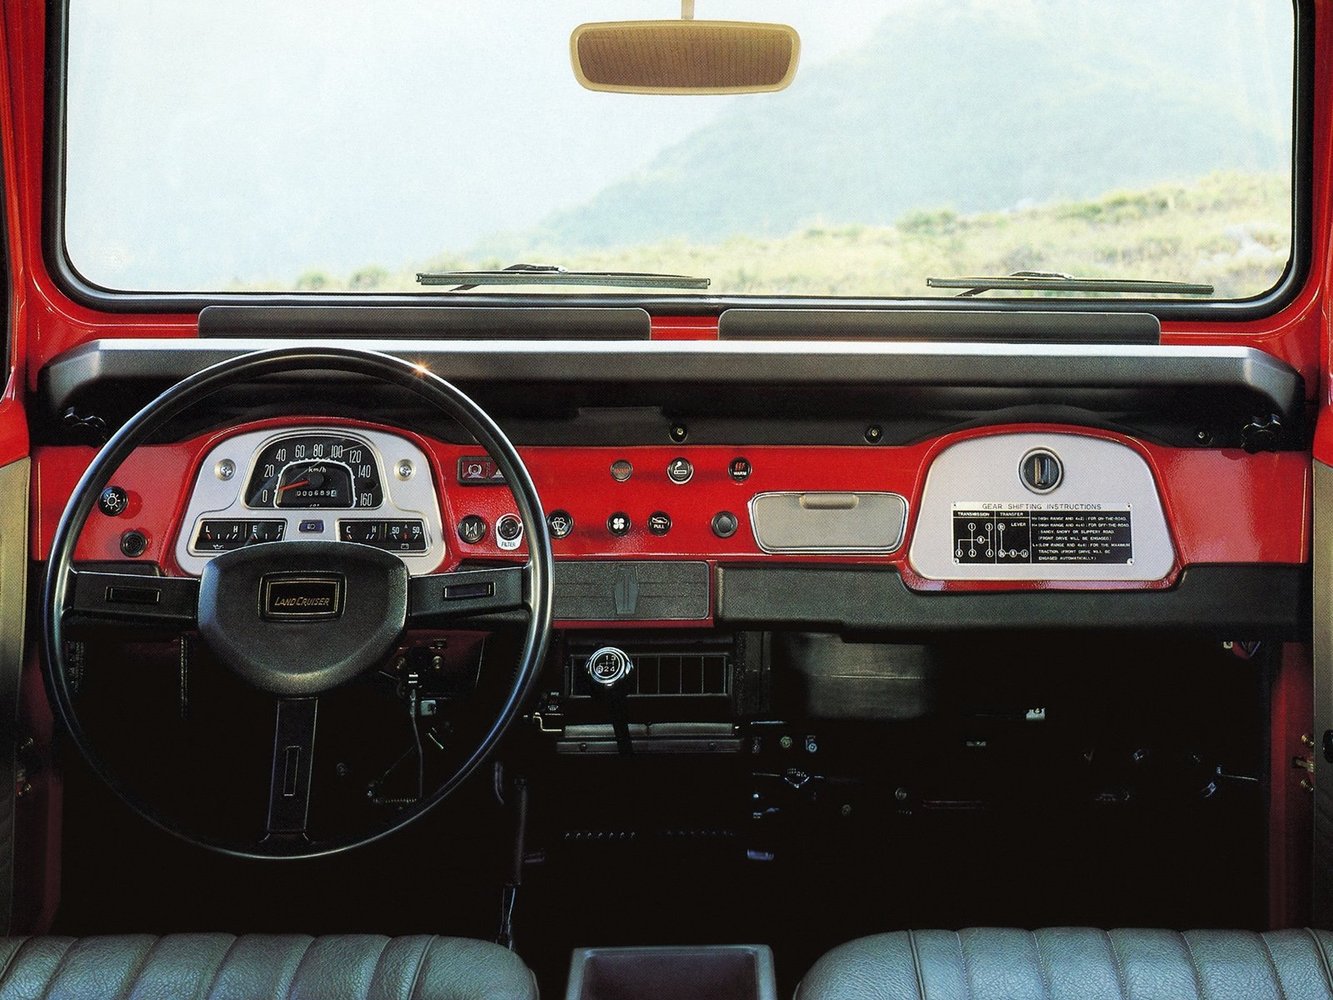 внедорожник Toyota Land Cruiser 1960 - 1984г выпуска модификация 4.2 MT (135 л.с.) 4×4